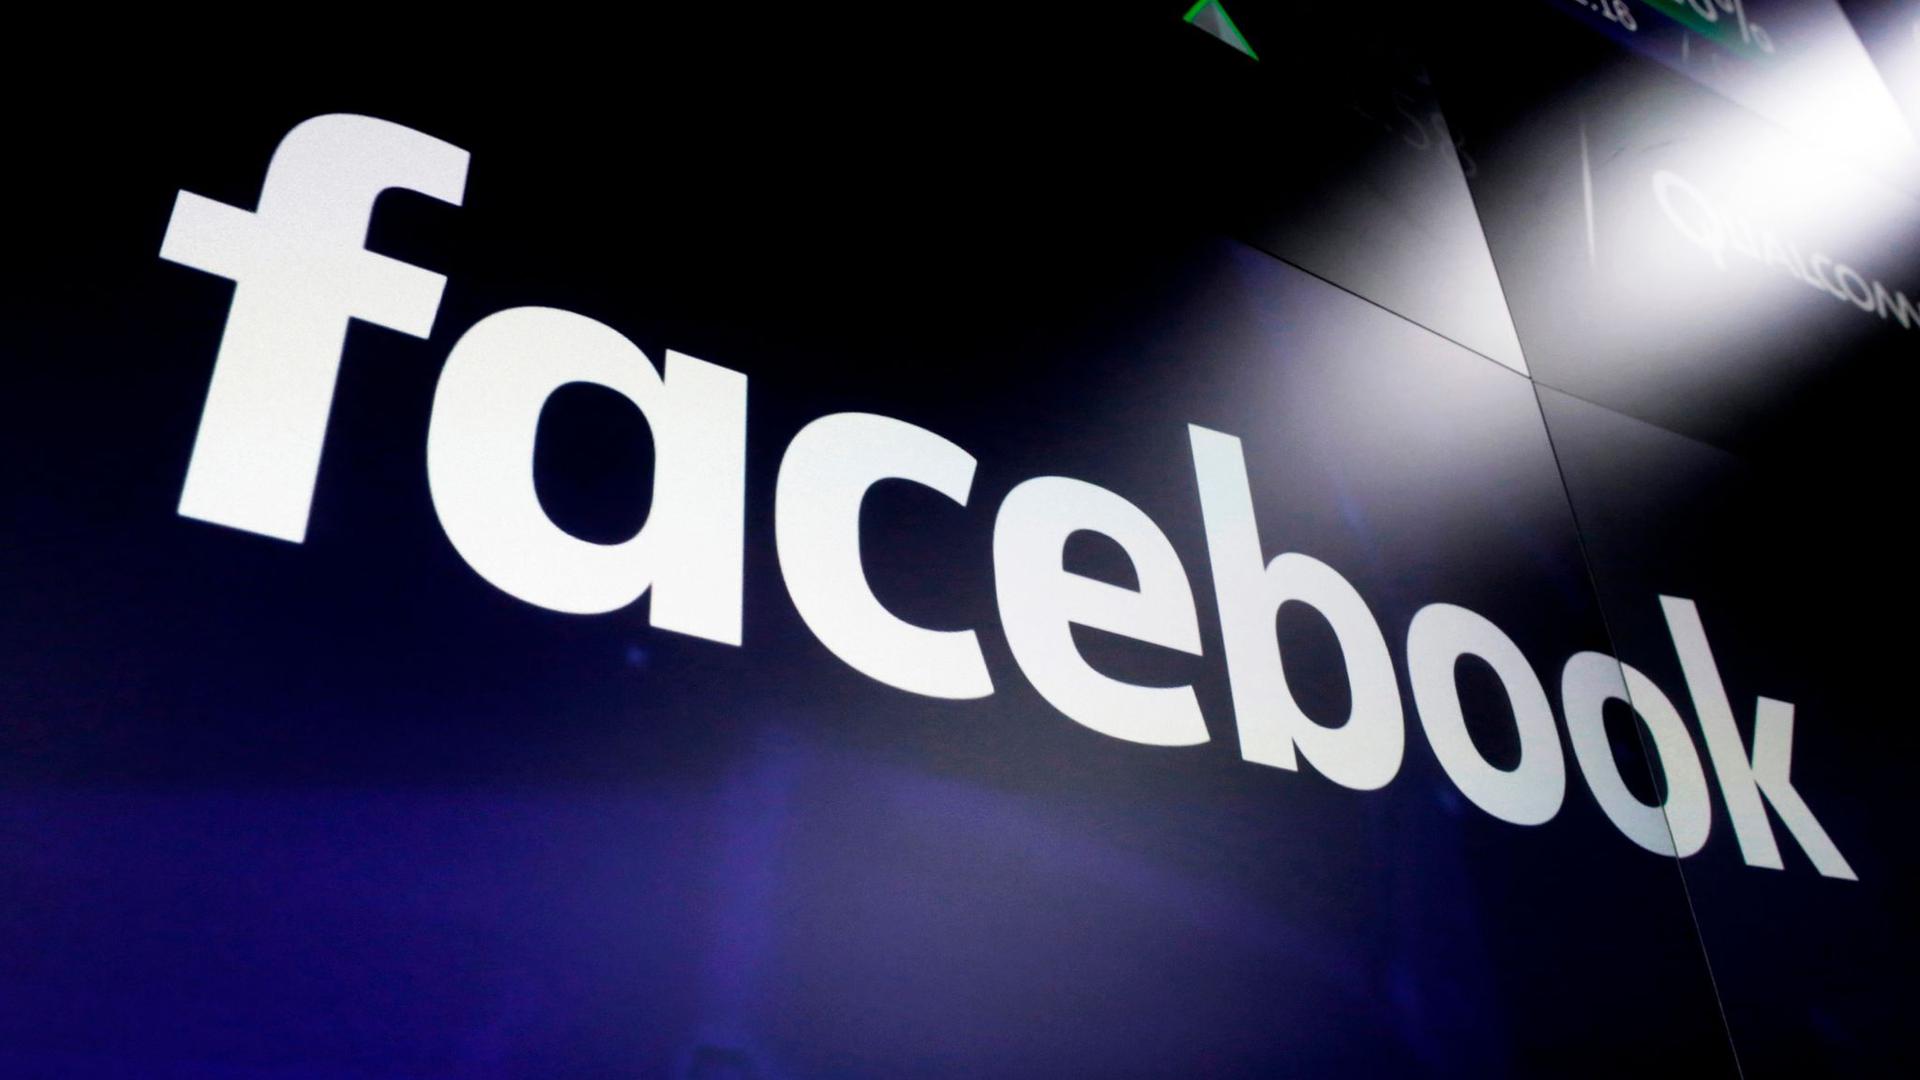 Facebook wirft den Querdenkern vor, in koordinierter Weise wiederholt gegen die Gemeinschaftsstandards des Konzerns verstoßen zu haben.